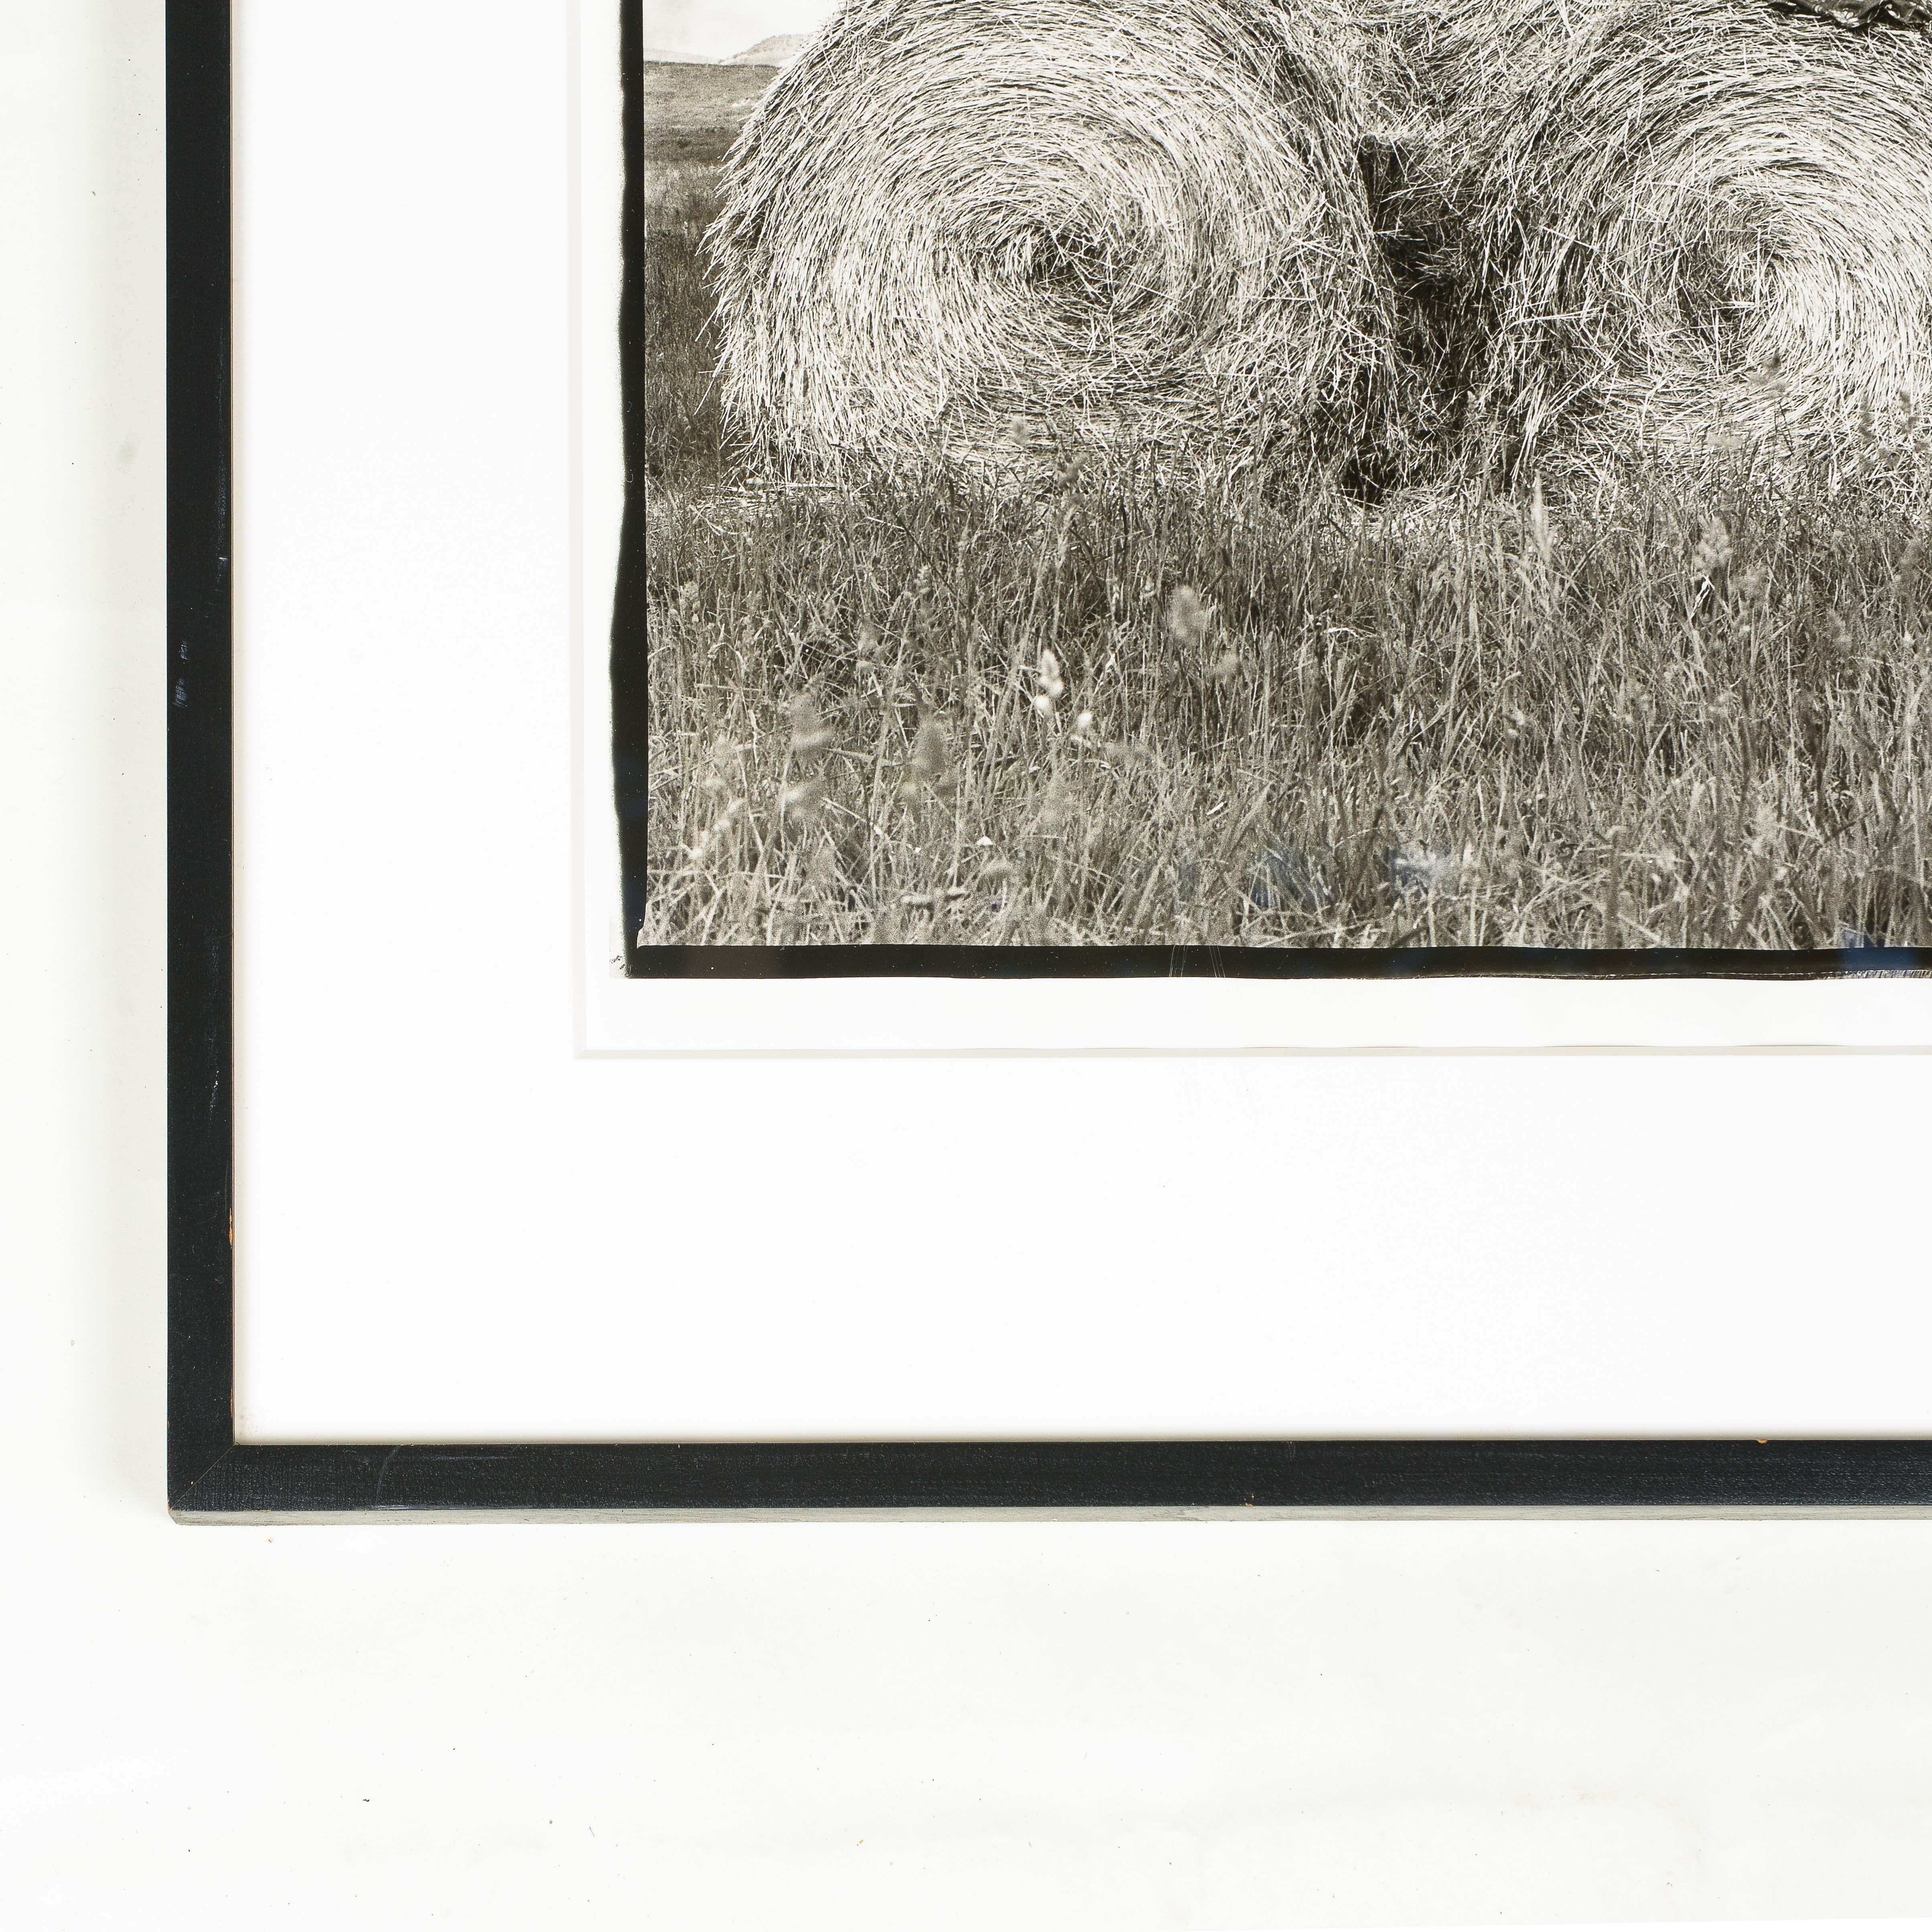 Silber-Gelatine-Druck
Rechts unten signiert; mit einfachem schwarzem Rahmen versehen.

Laura Wilson (geb. 1939) ist eine amerikanische Fotografin. Wilsons berufliche Karriere begann 1979, als Richard Avedon sie als Assistentin für seine Ausstellung